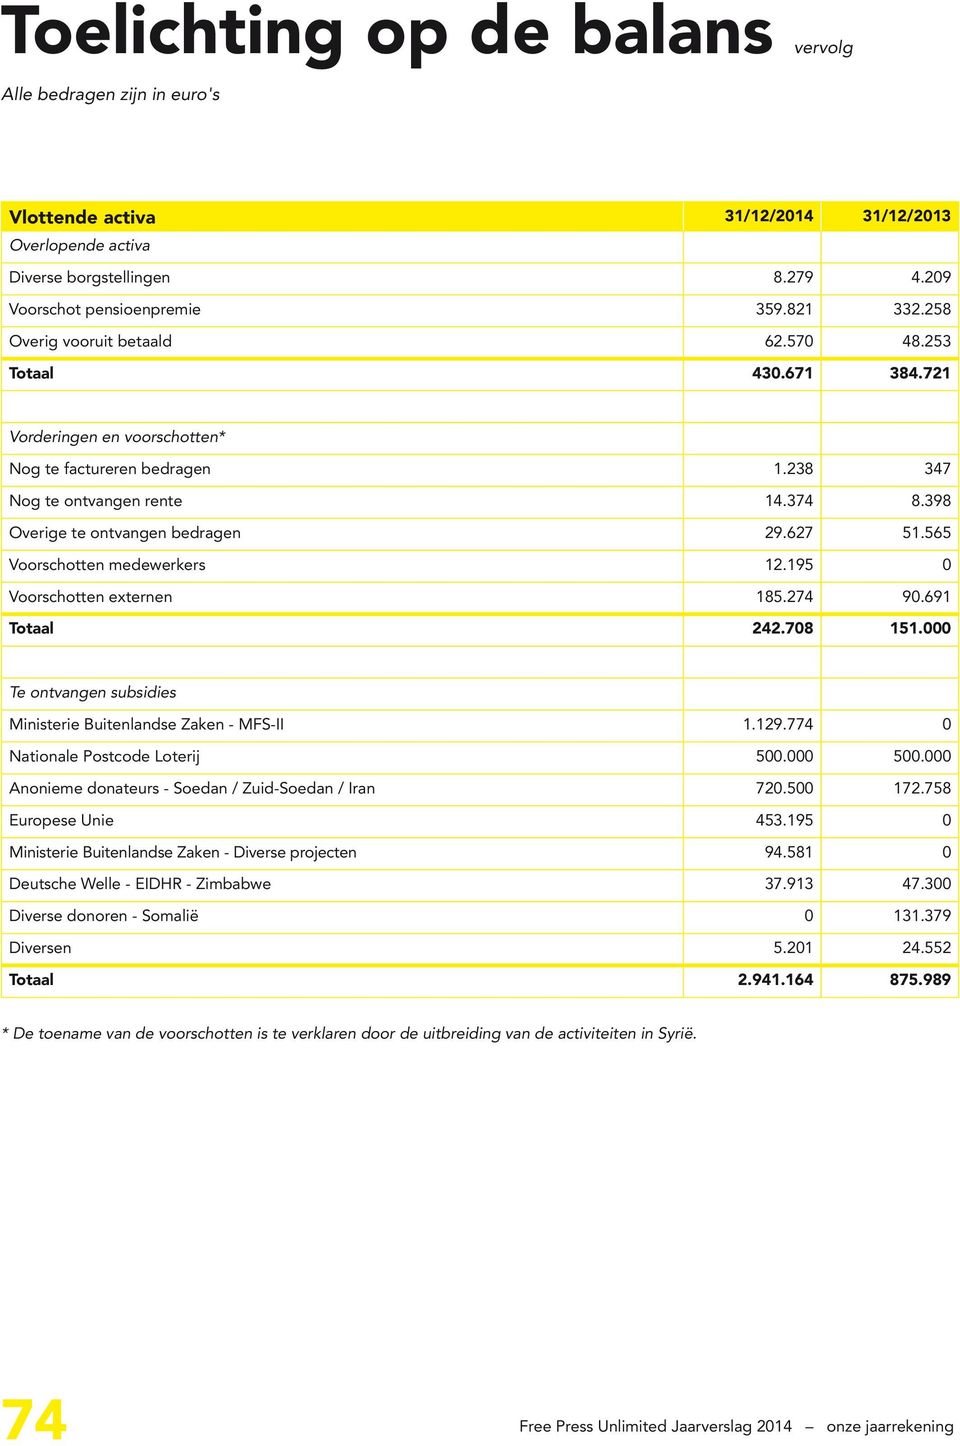 565 Voorschotten medewerkers 12.195 0 Voorschotten externen 185.274 90.691 Totaal 242.708 151.000 Te ontvangen subsidies Ministerie Buitenlandse Zaken - MFS-II 1.129.